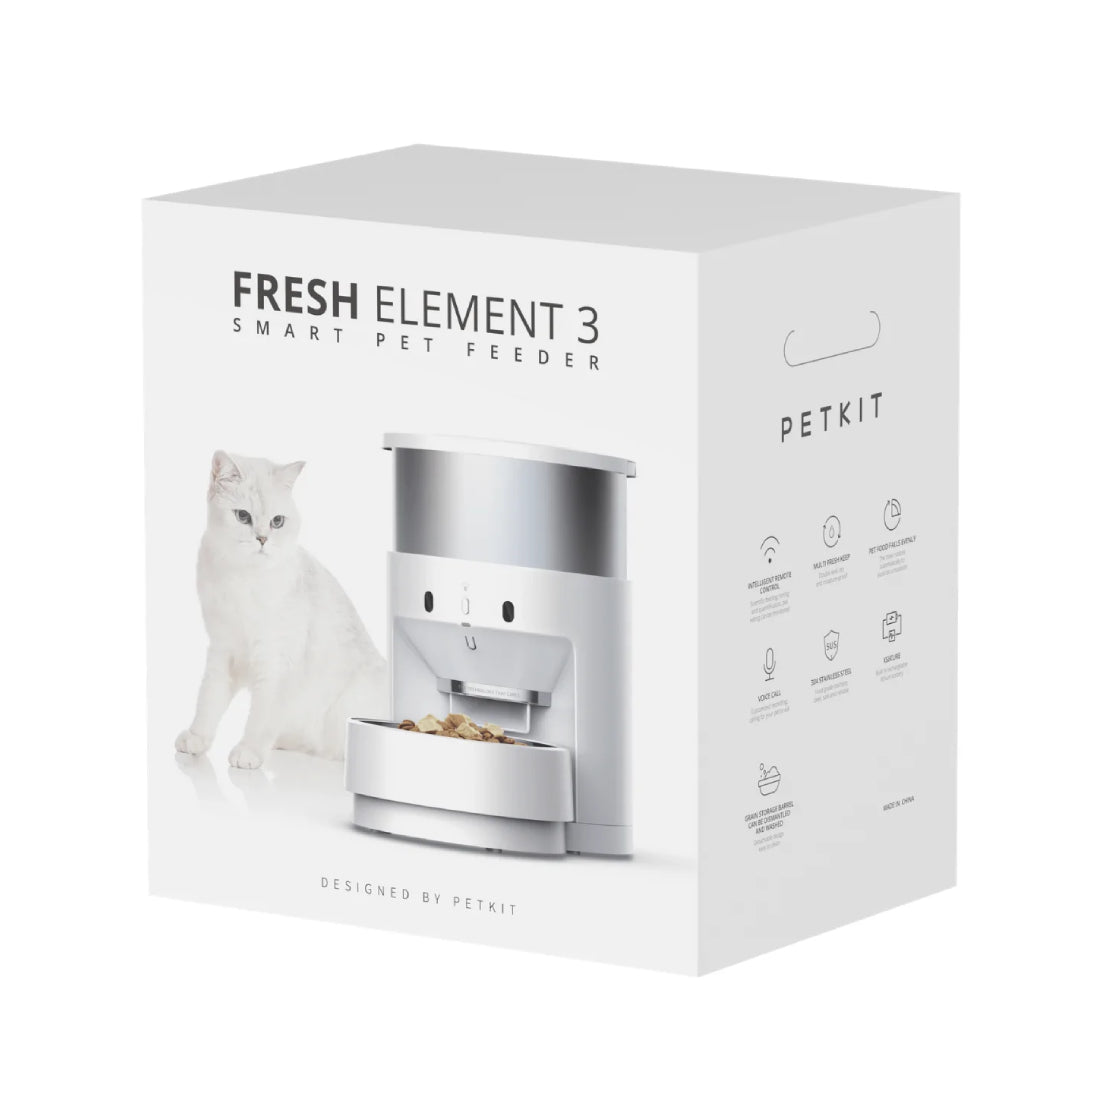 Petkit Fresh Element Gen 3 Solo Smart Feeder - Store 974 | ستور ٩٧٤